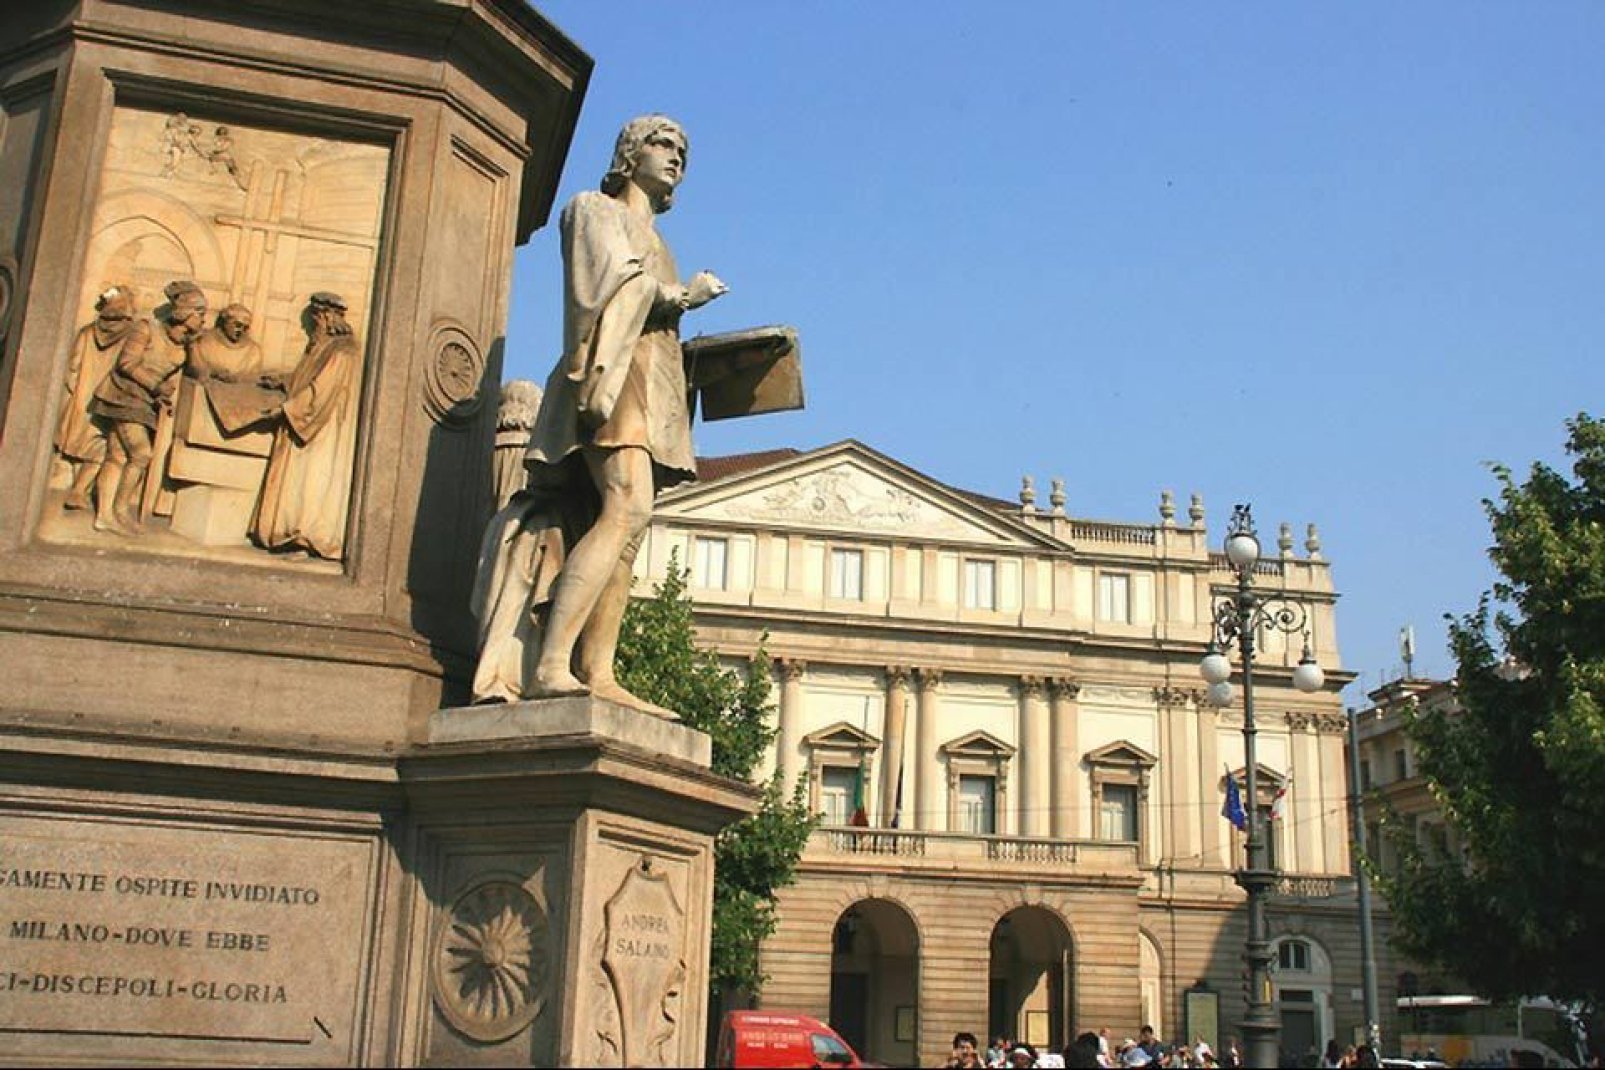 Das Mailänder Teatro alla Scala ist ein berühmtes Opernhaus und vielleicht die berühmteste künstlerische Stätte der lombardischen Hauptstadt.